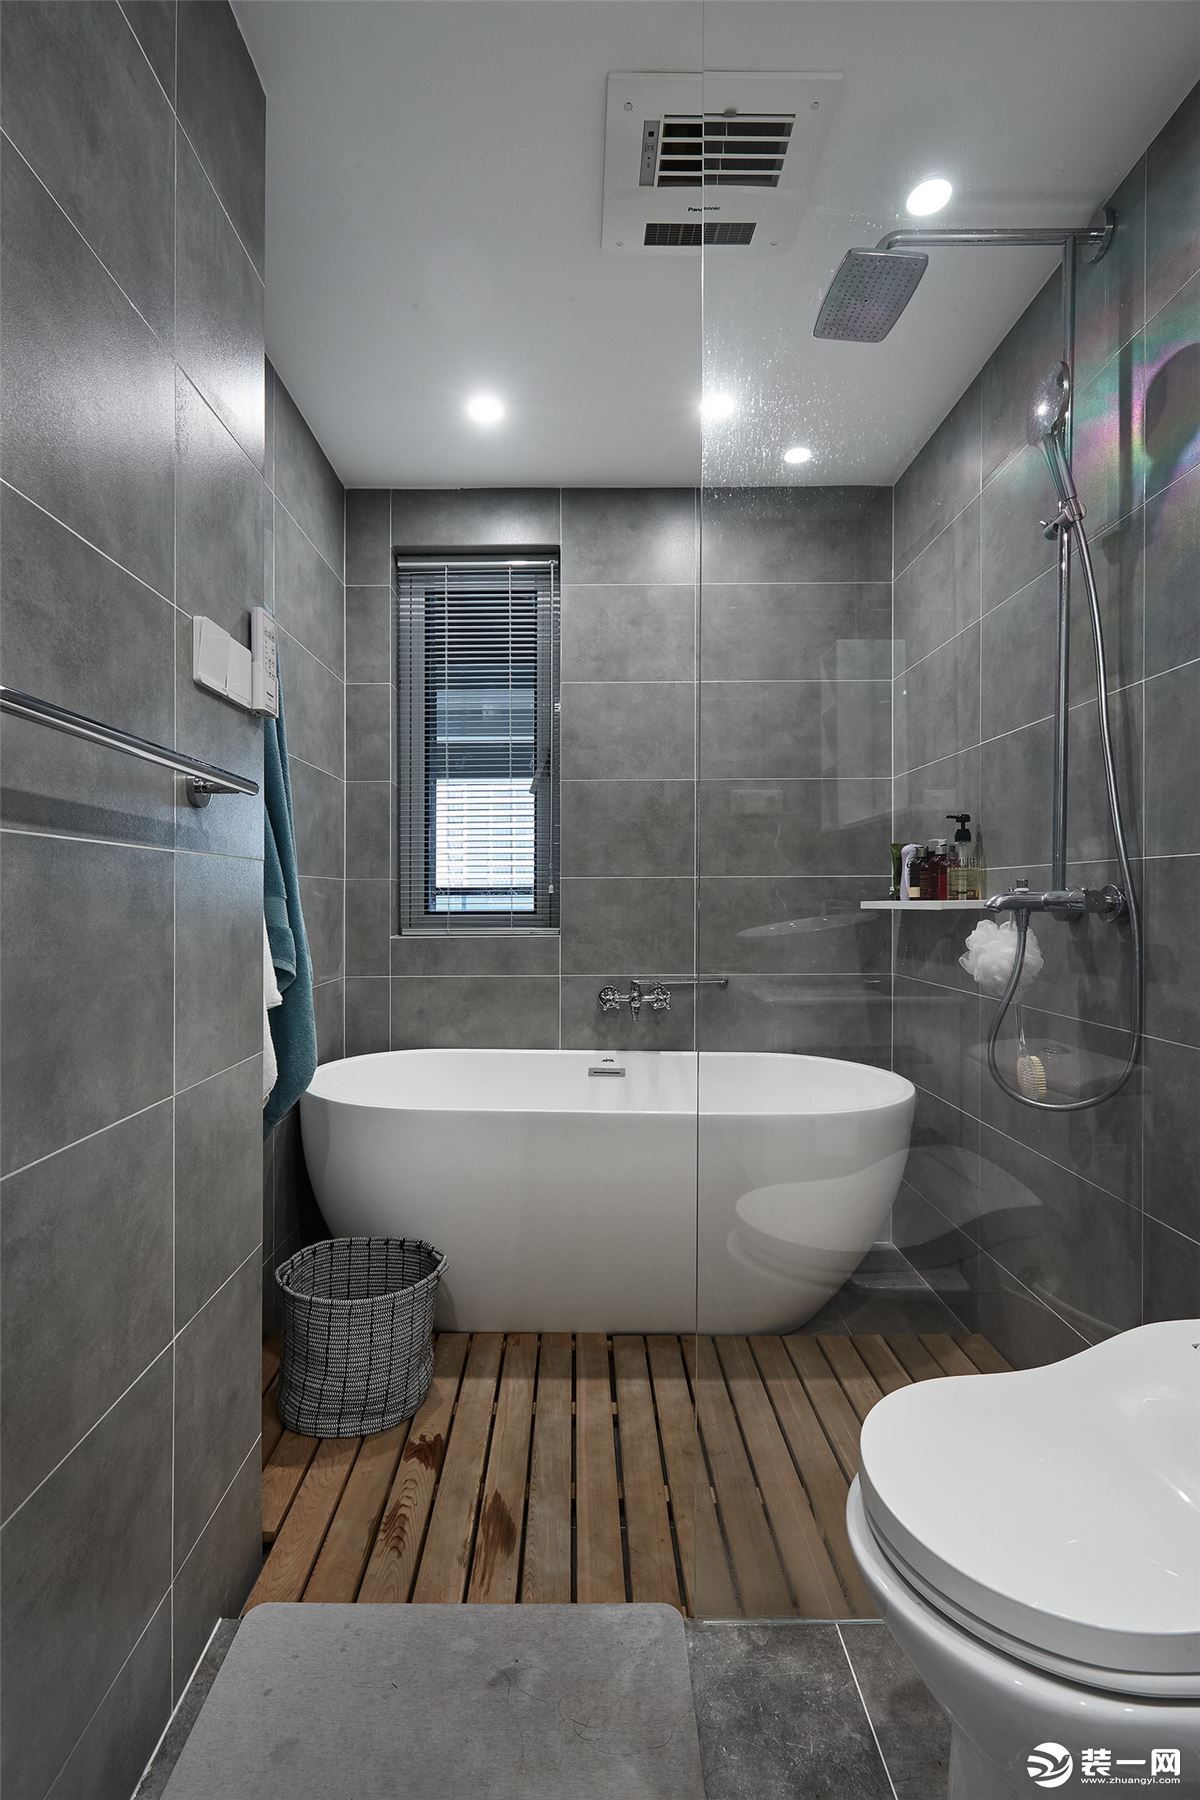 浴缸淋浴房地面均下沉5公分，铺设专业卫生间地板，使得卫生间看起来也并非冰冷无力